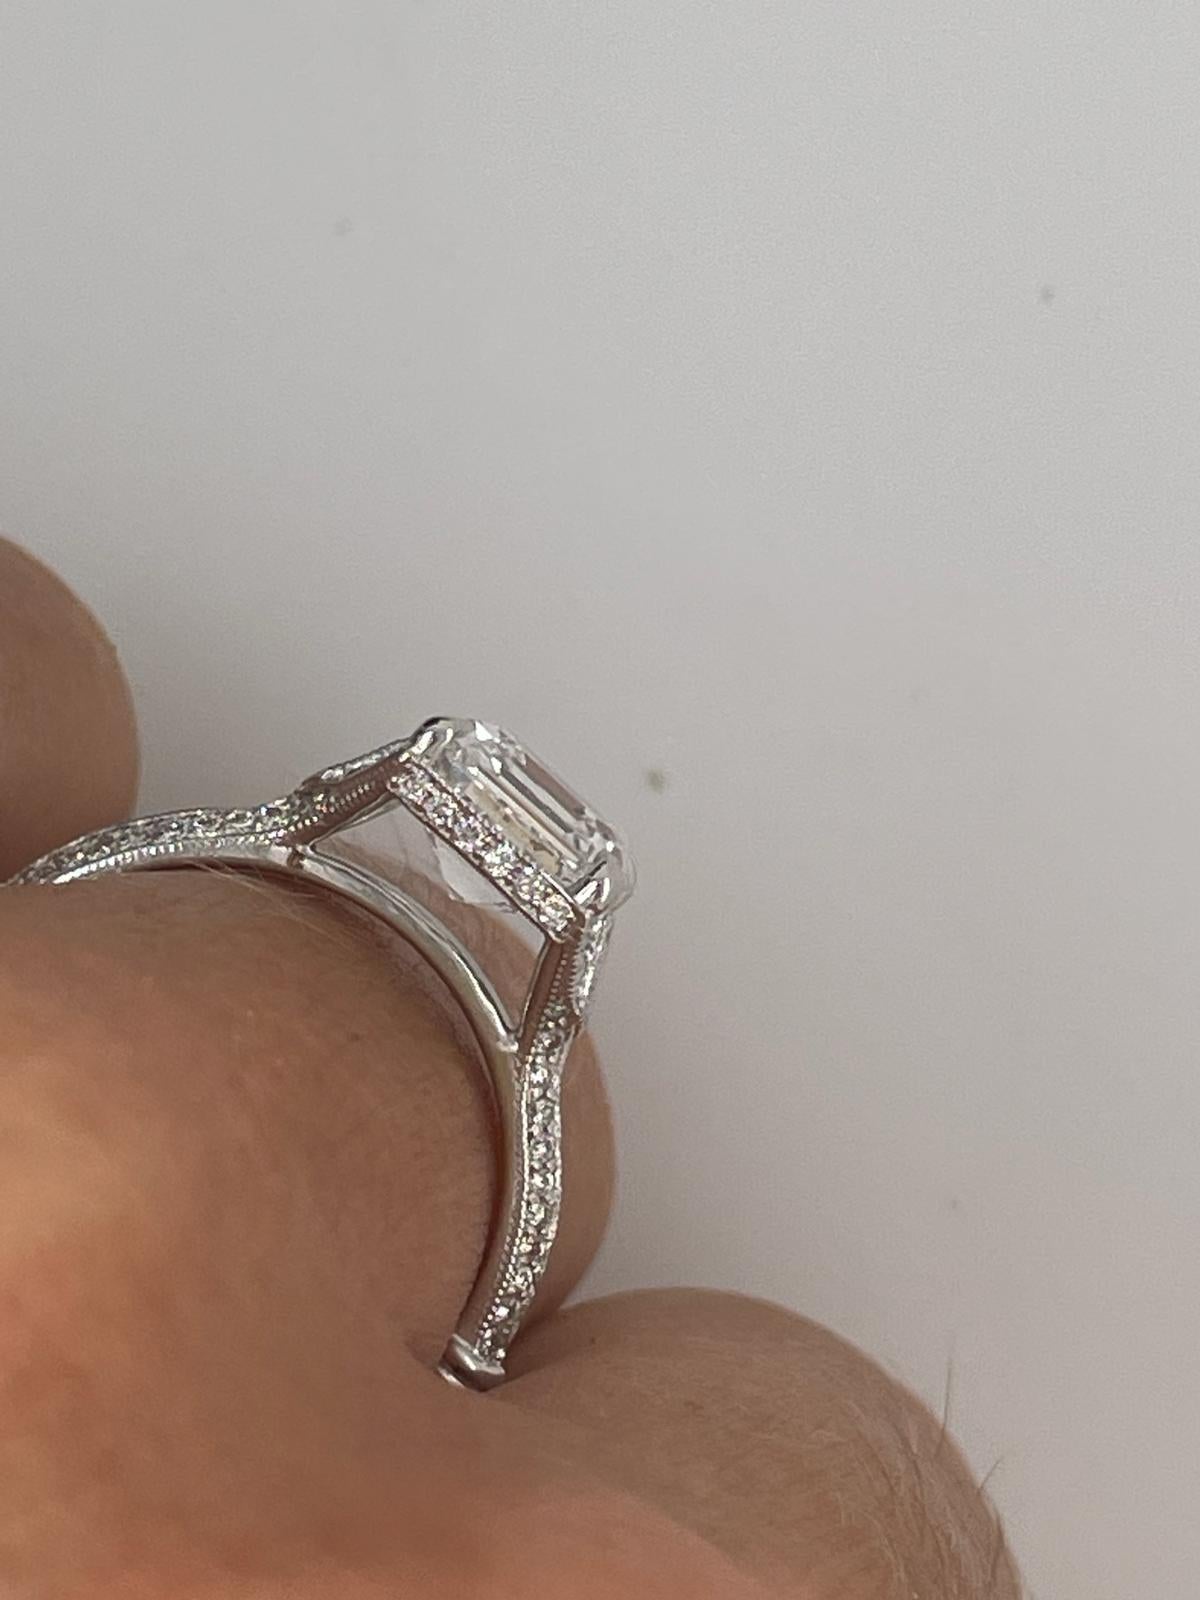 For Sale:  2ct Art Deco asscher cut diamond ring 12